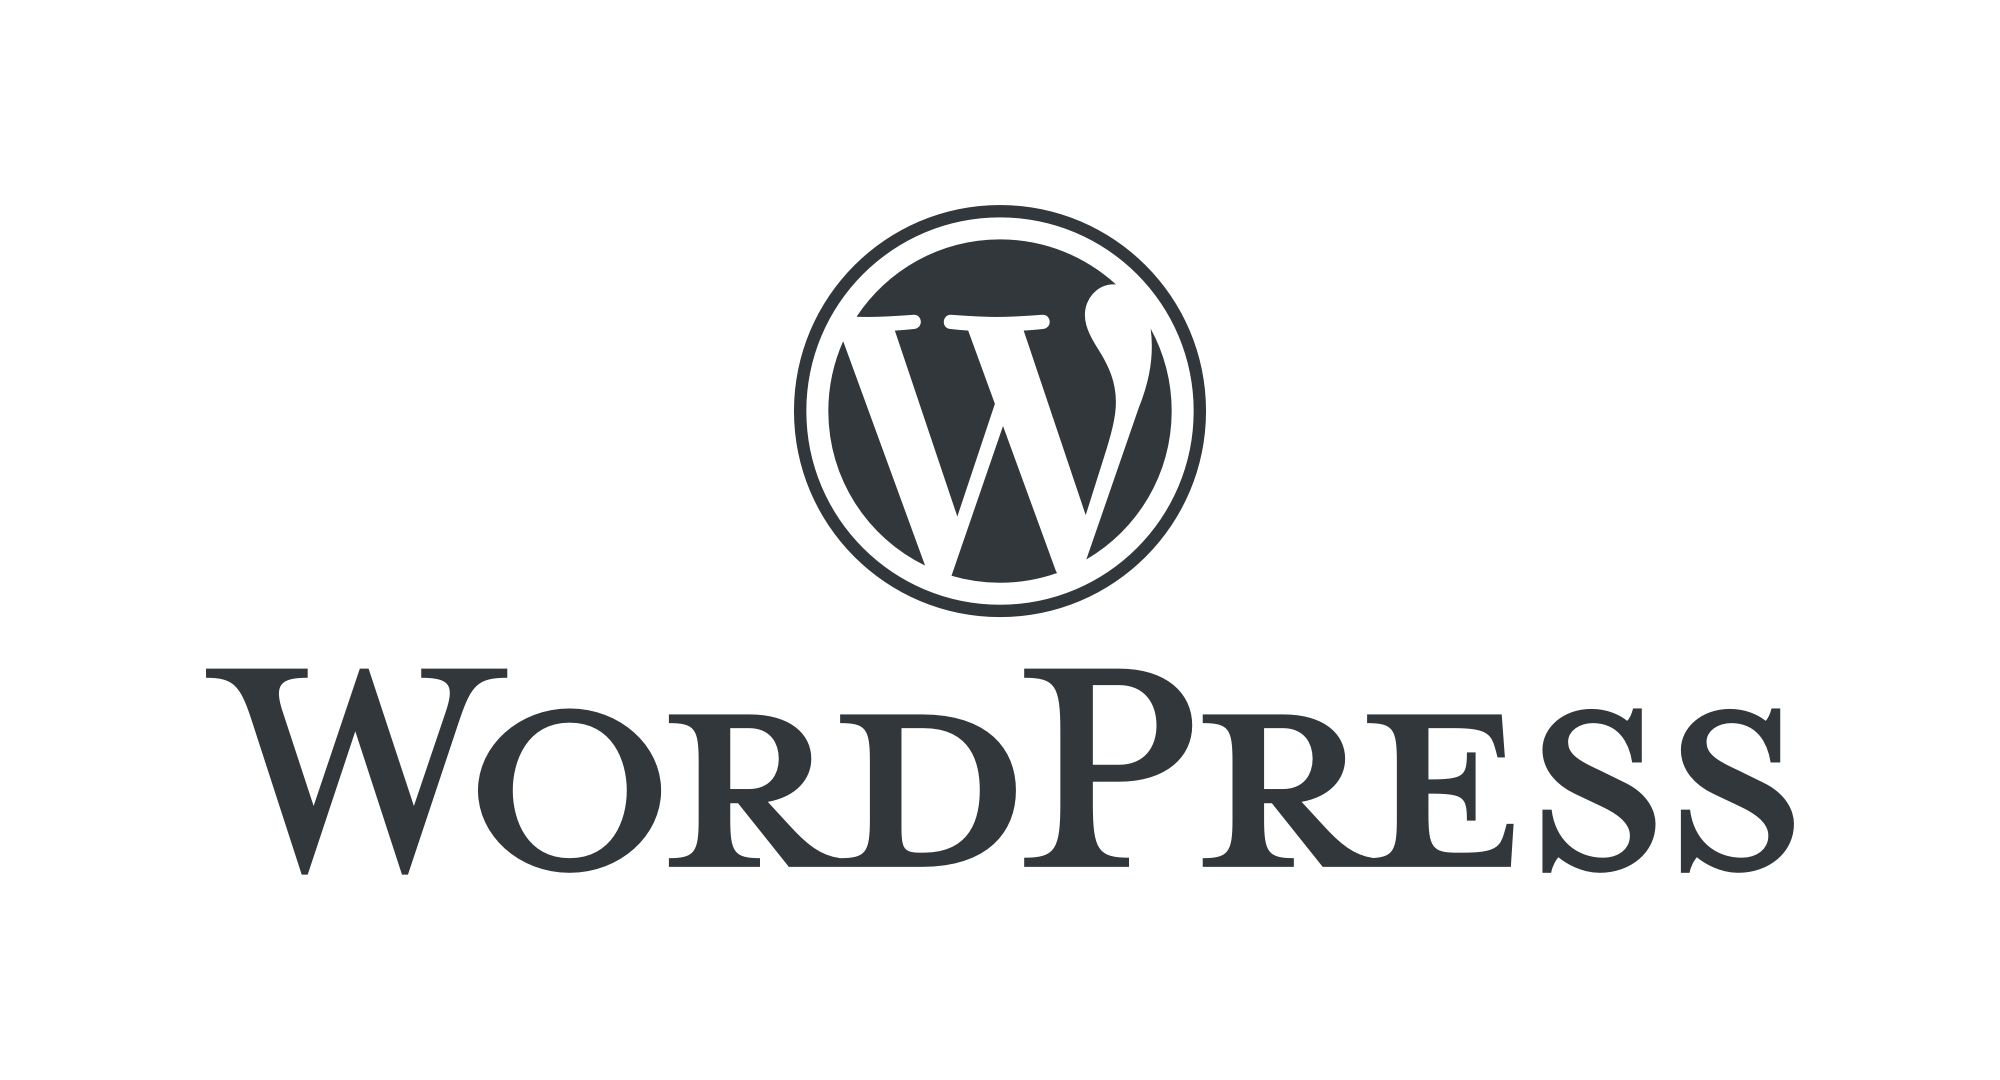 webentwicklung wordpress